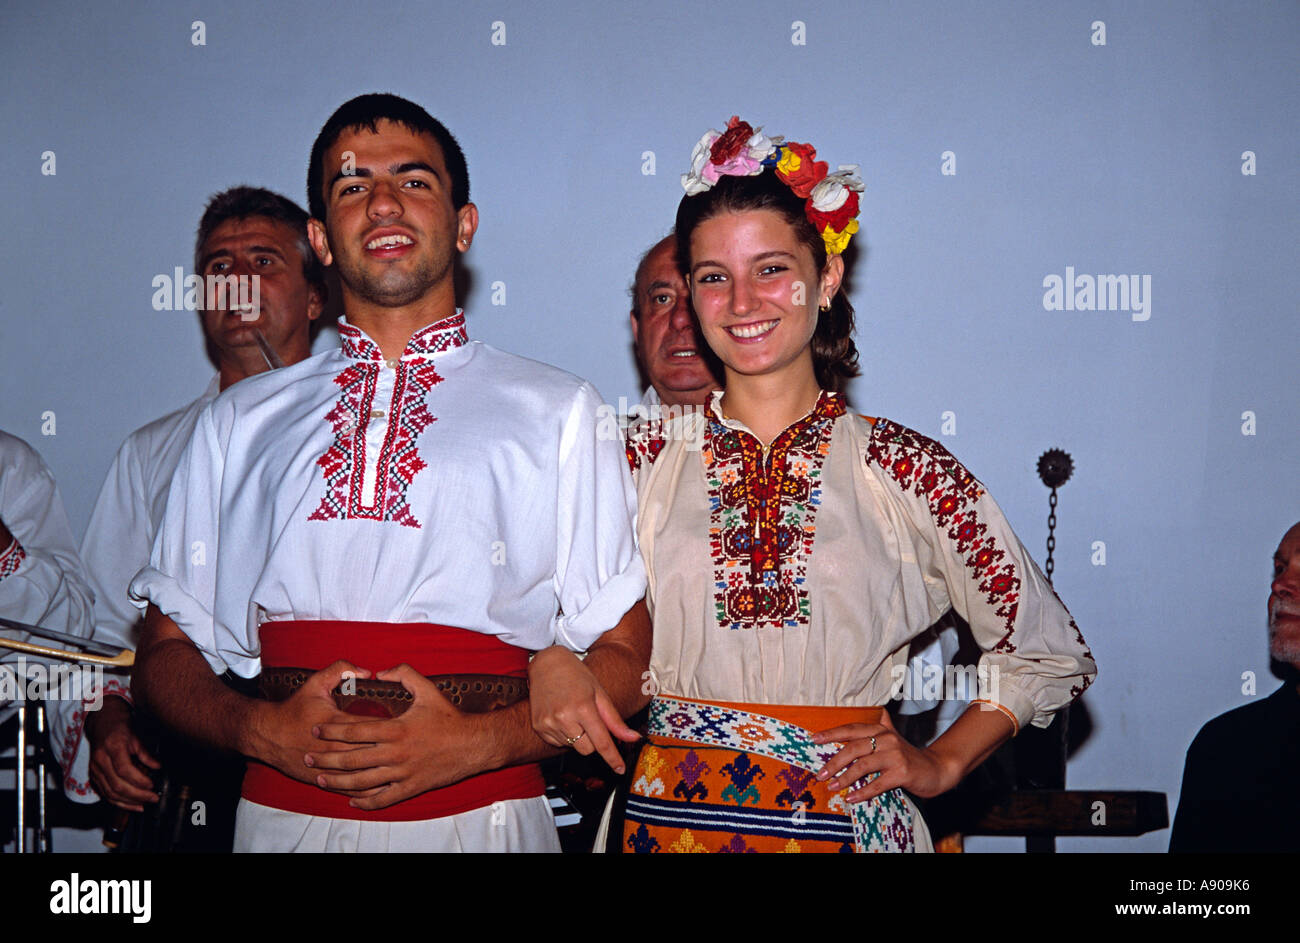 Dancers in national costume posing, Arbanassi, Bulgaria Stock Photo